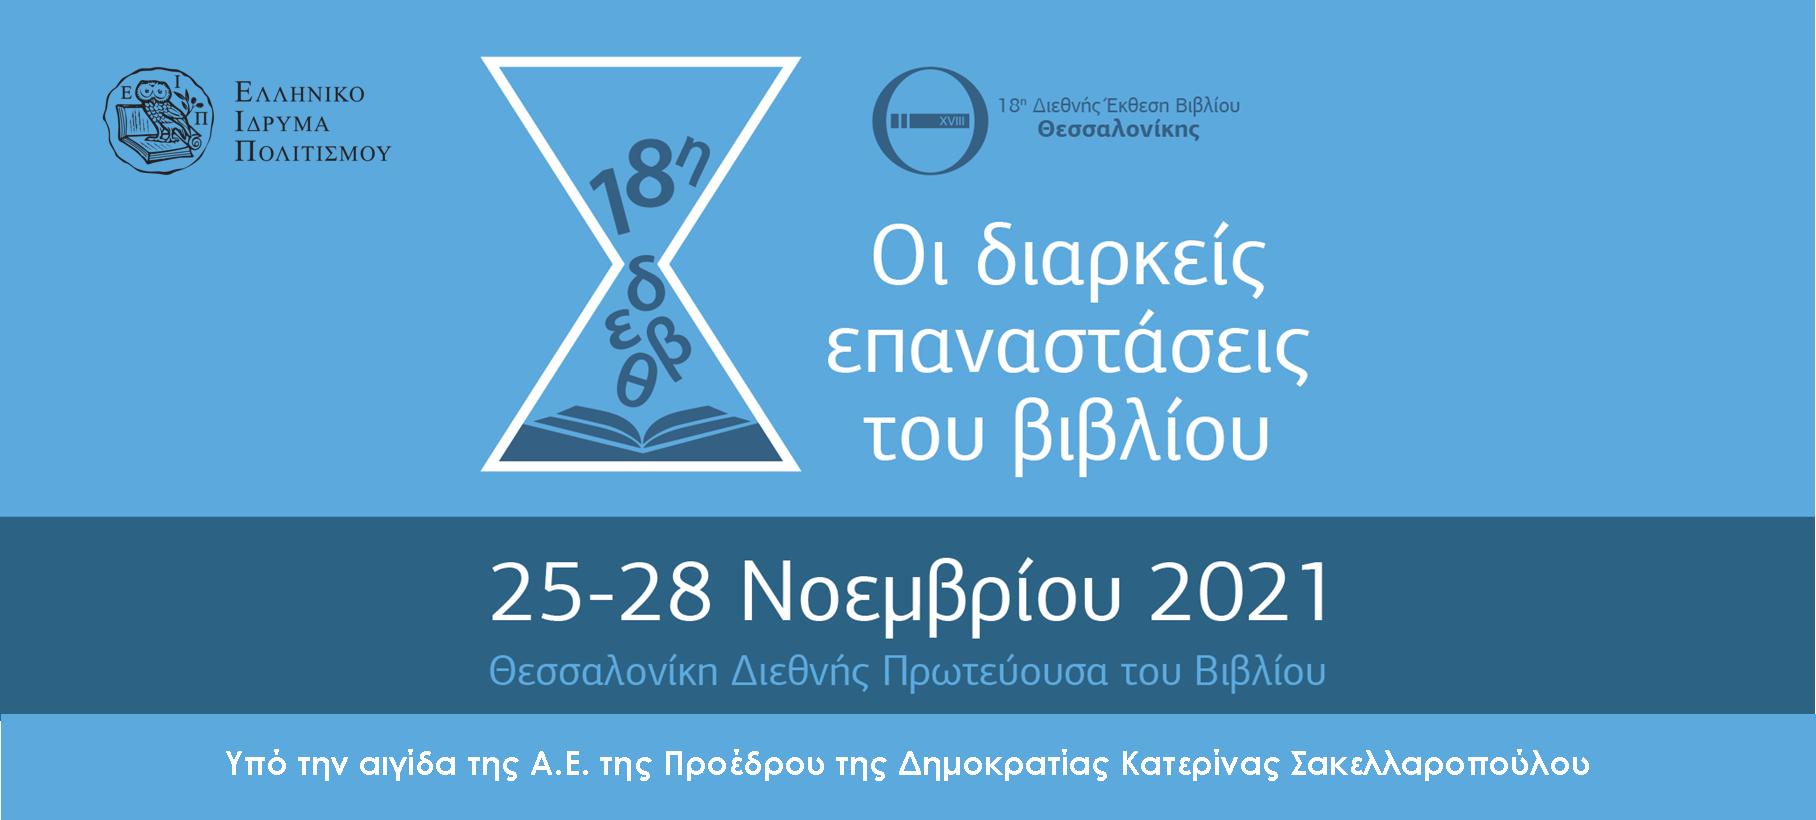 Ανεβάζει αυλαία η 18η Διεθνής Έκθεση Βιβλίου Θεσσαλονίκης